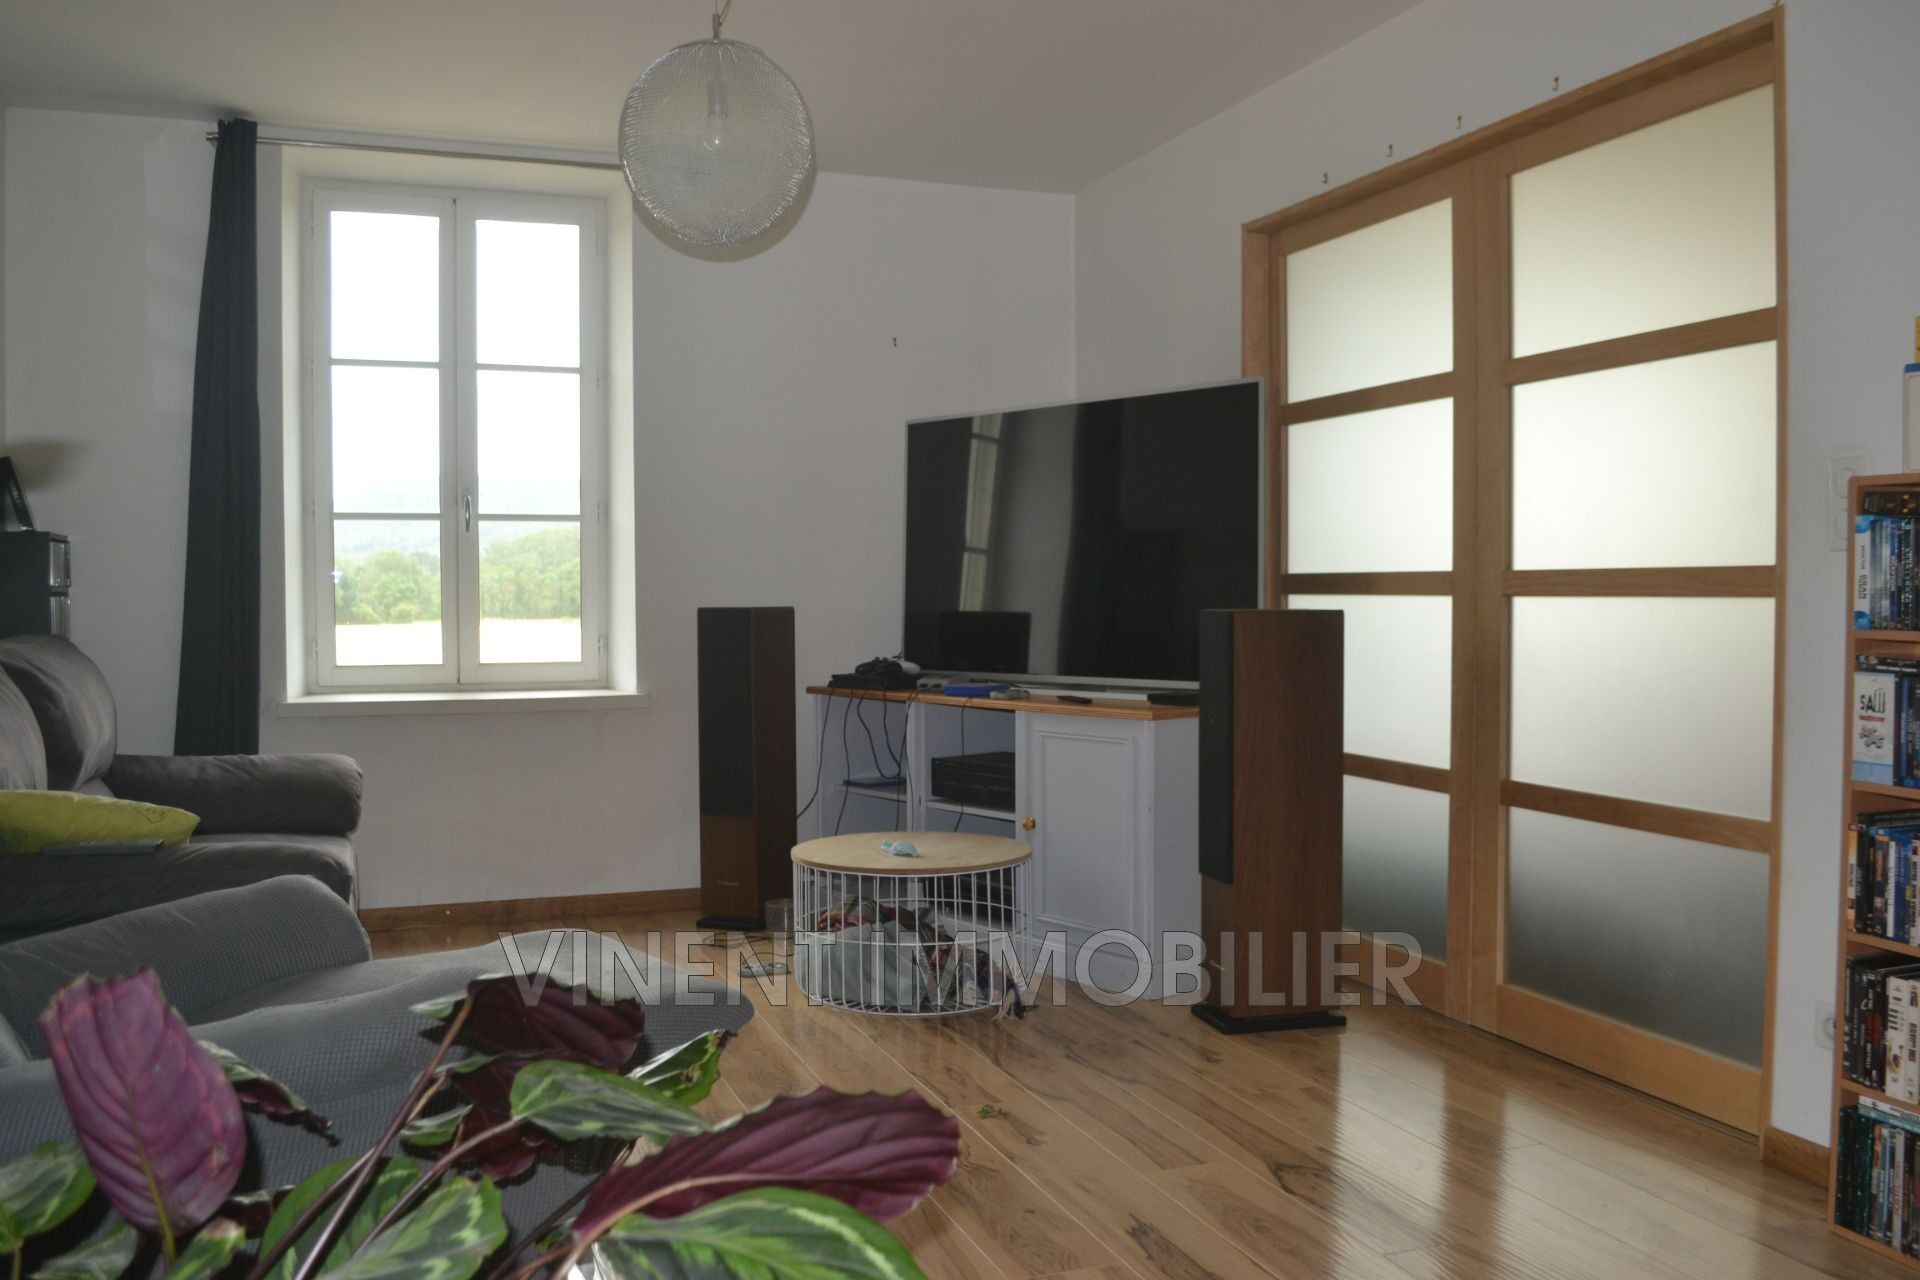 Vente Appartement 112 m² à Montboucher-sur-Jabron 179 000 €